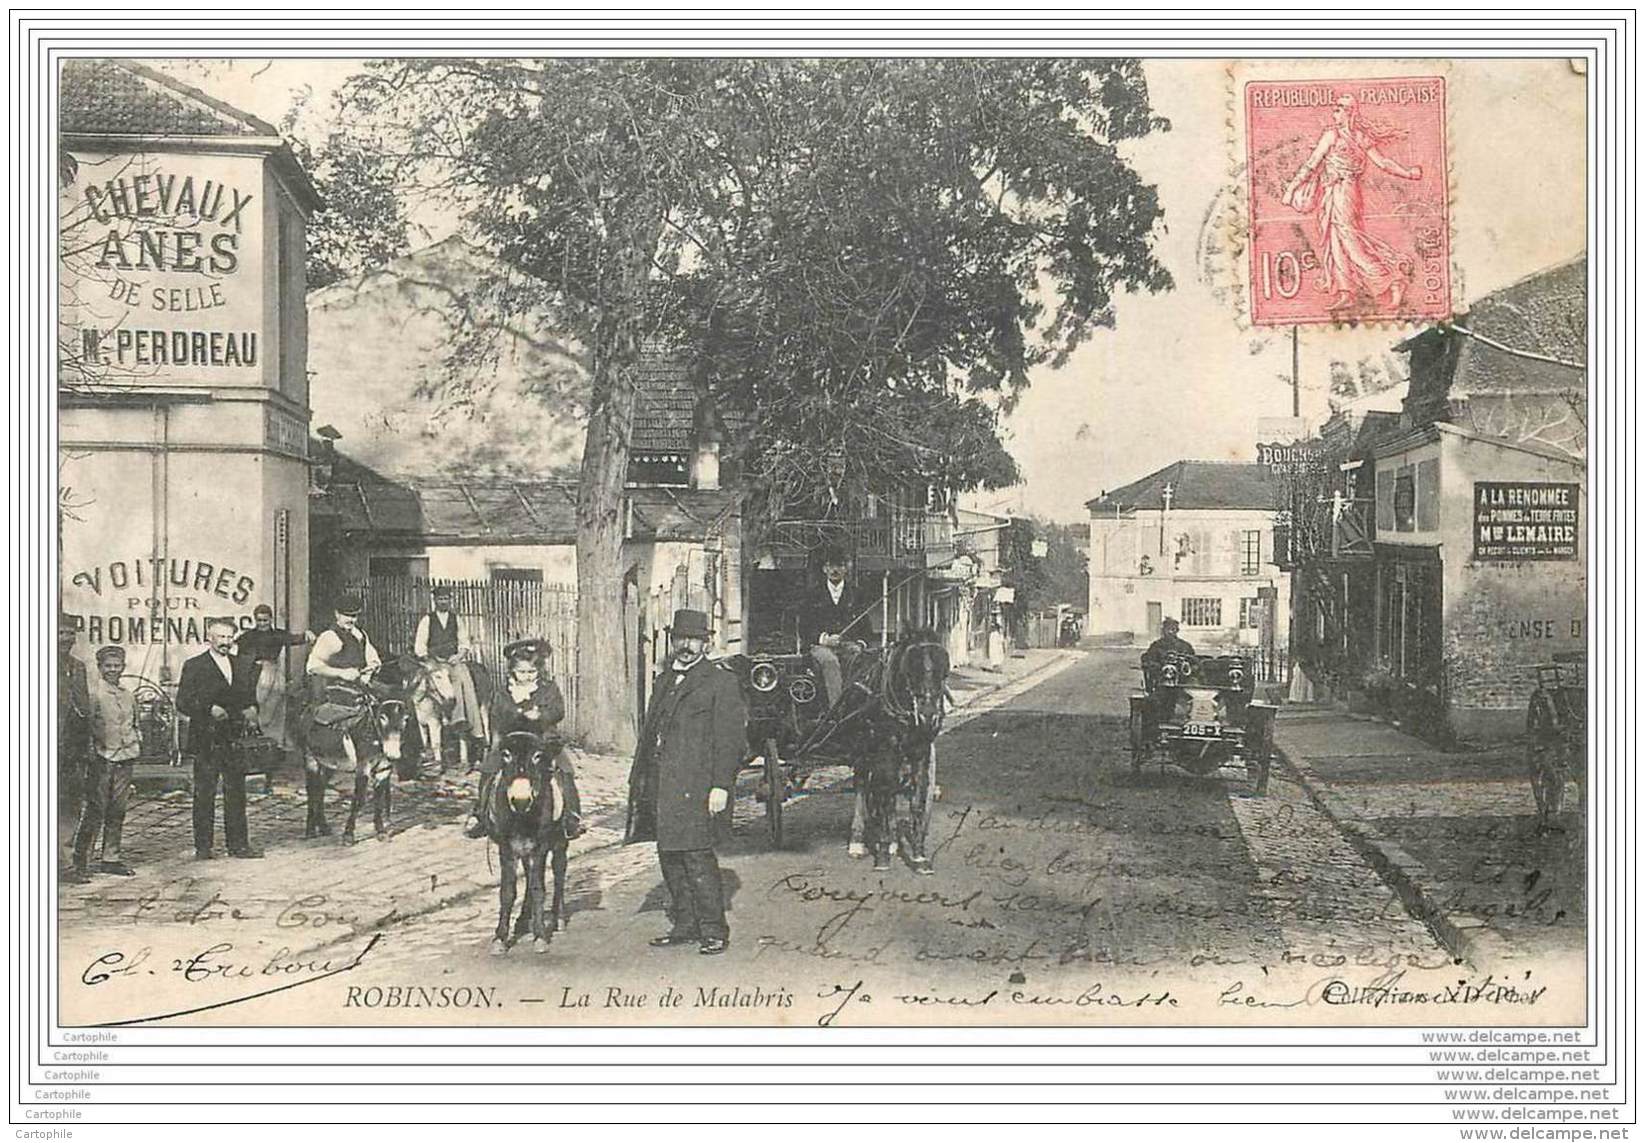 92 - ROBINSON -  La Rue Malabris - Ane - Caleche - Automobile - Le Plessis Robinson